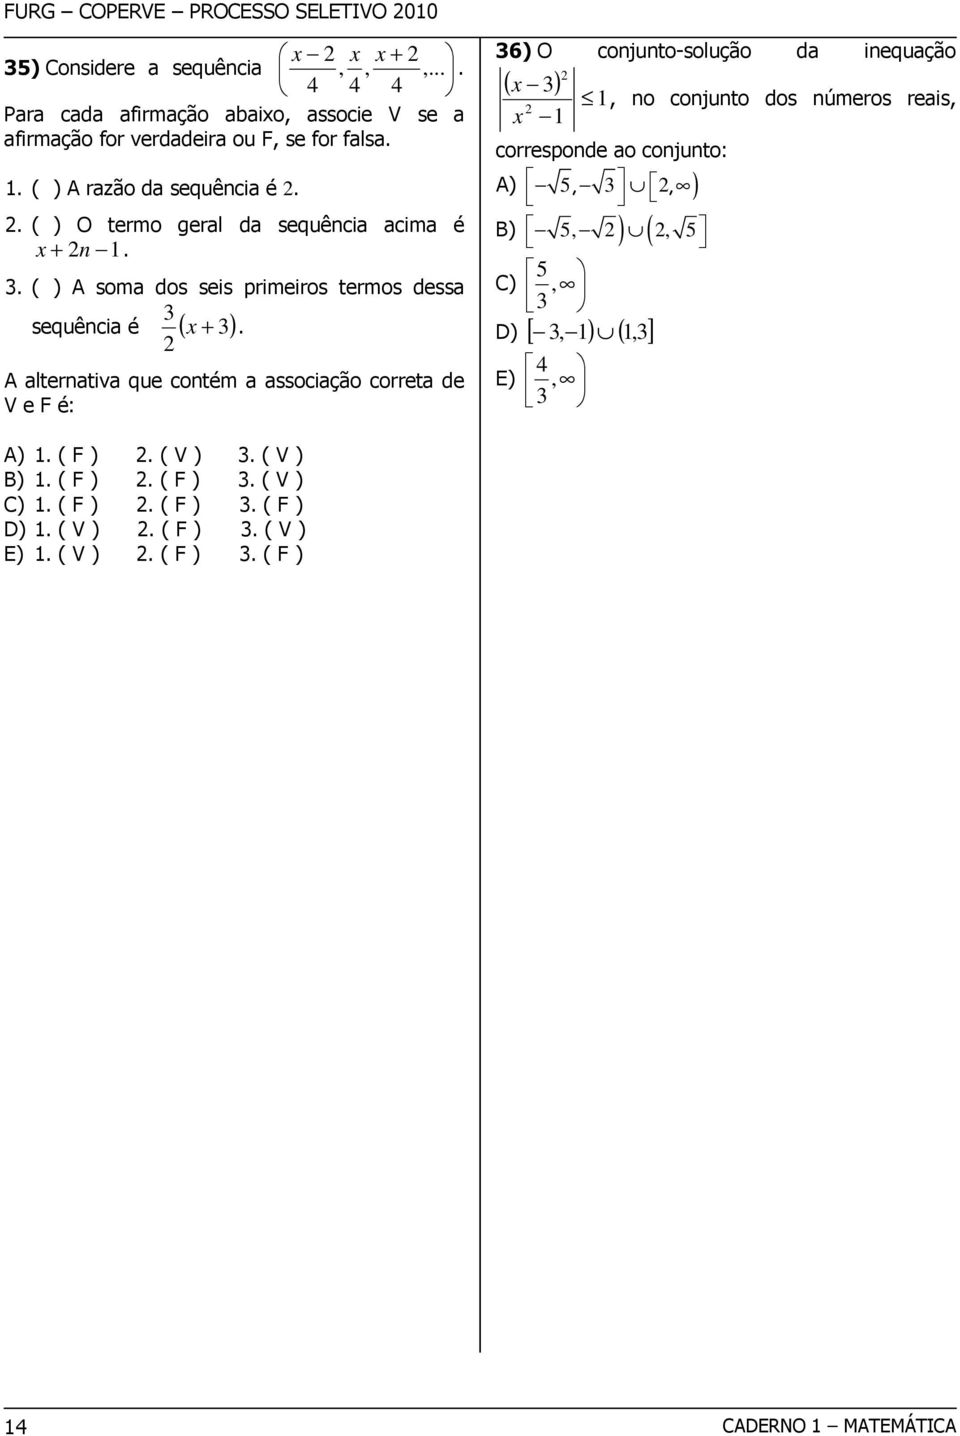 A alternativa que contém a associação correta de V e F é: 6) O conjunto-solução da inequação ( x ) x, no conjunto dos números reais, corresponde ao conjunto: A)